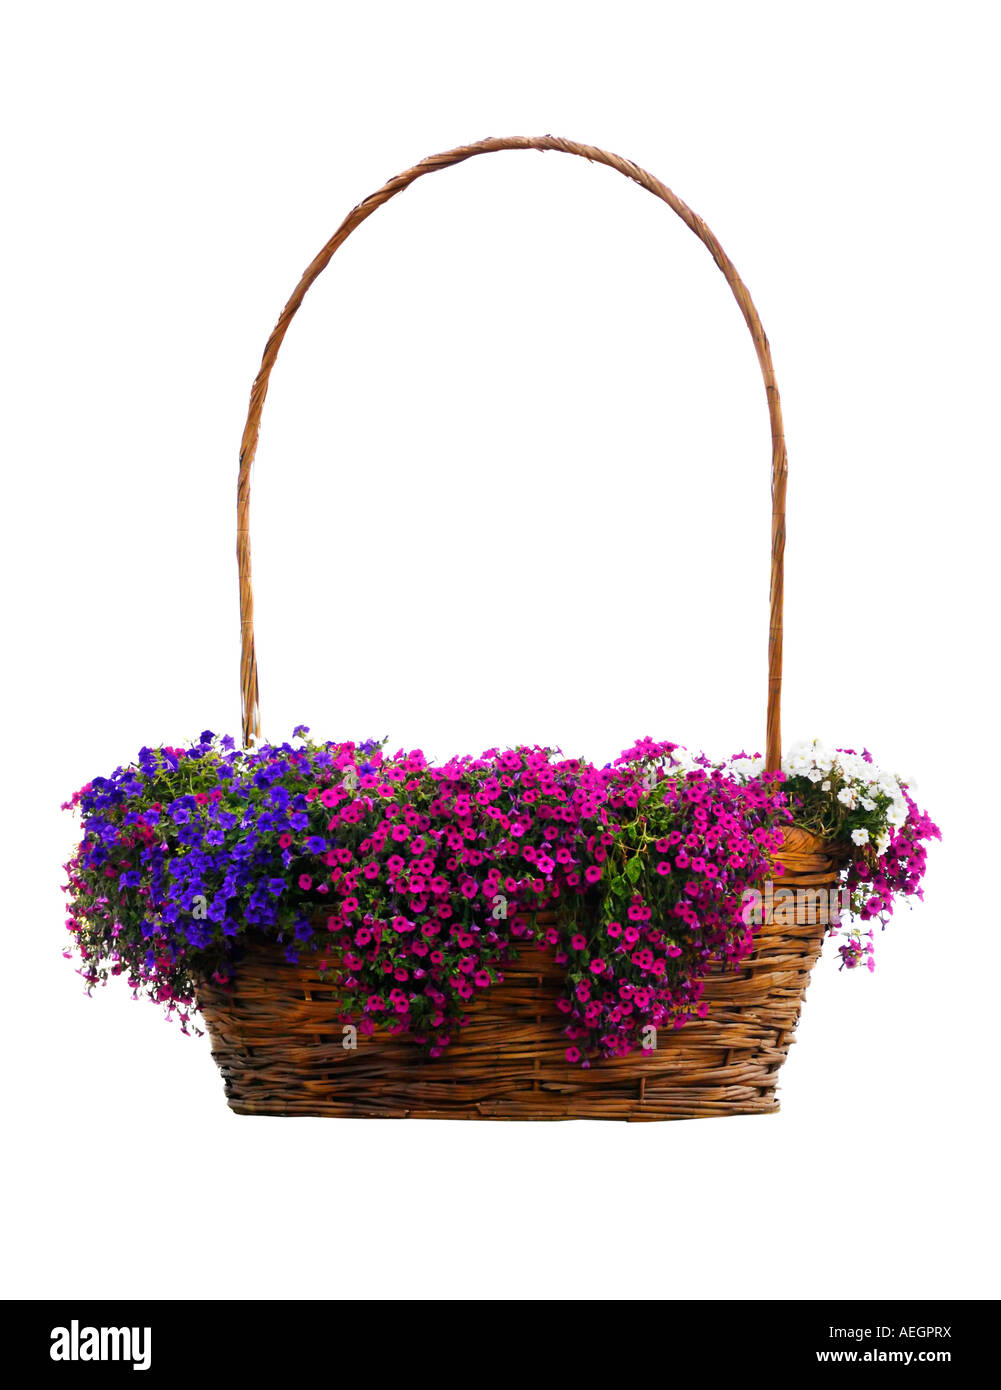 Large flower basket full of small bellflowers Stock Photo